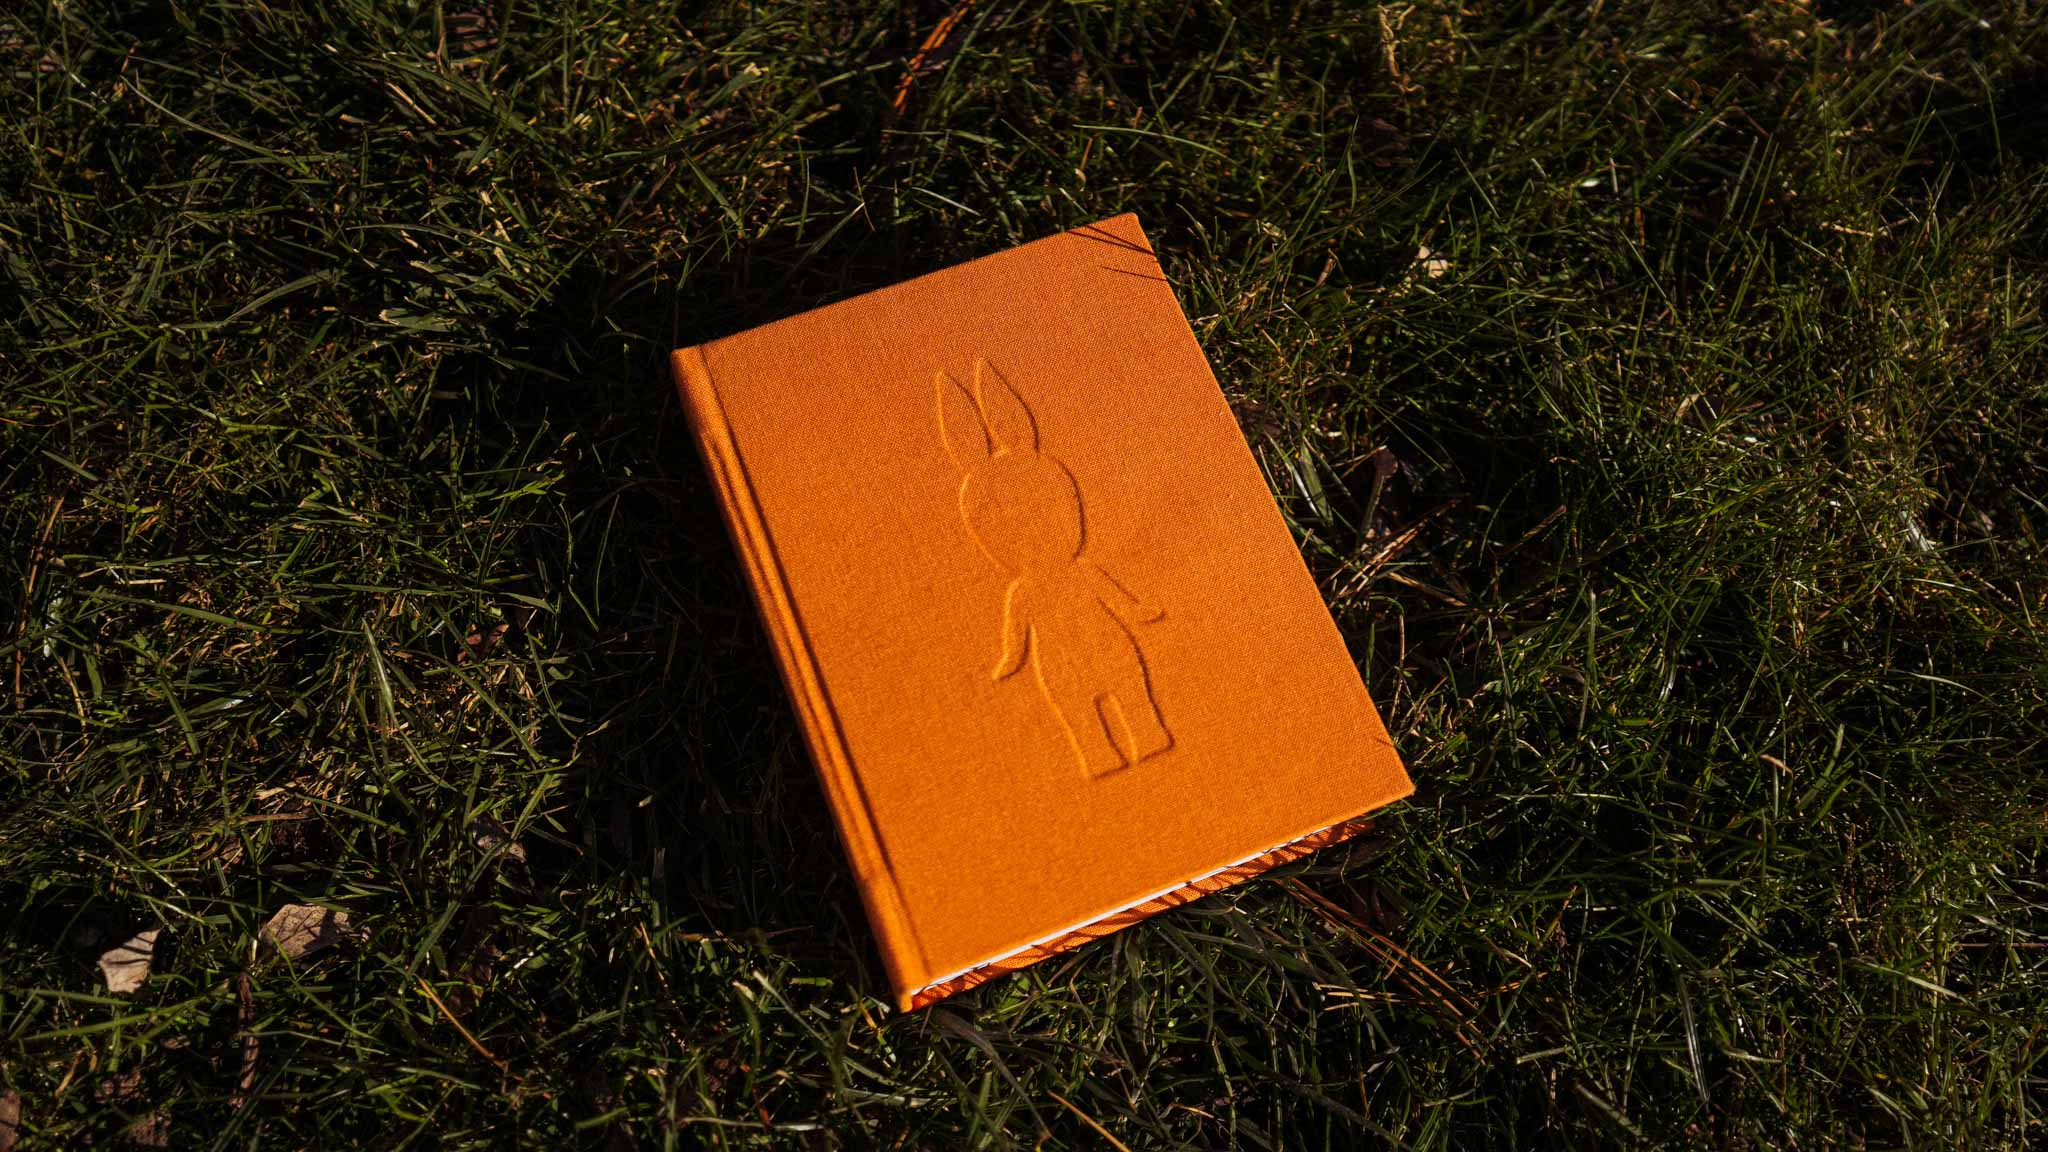 A little orange clothbound book on grass